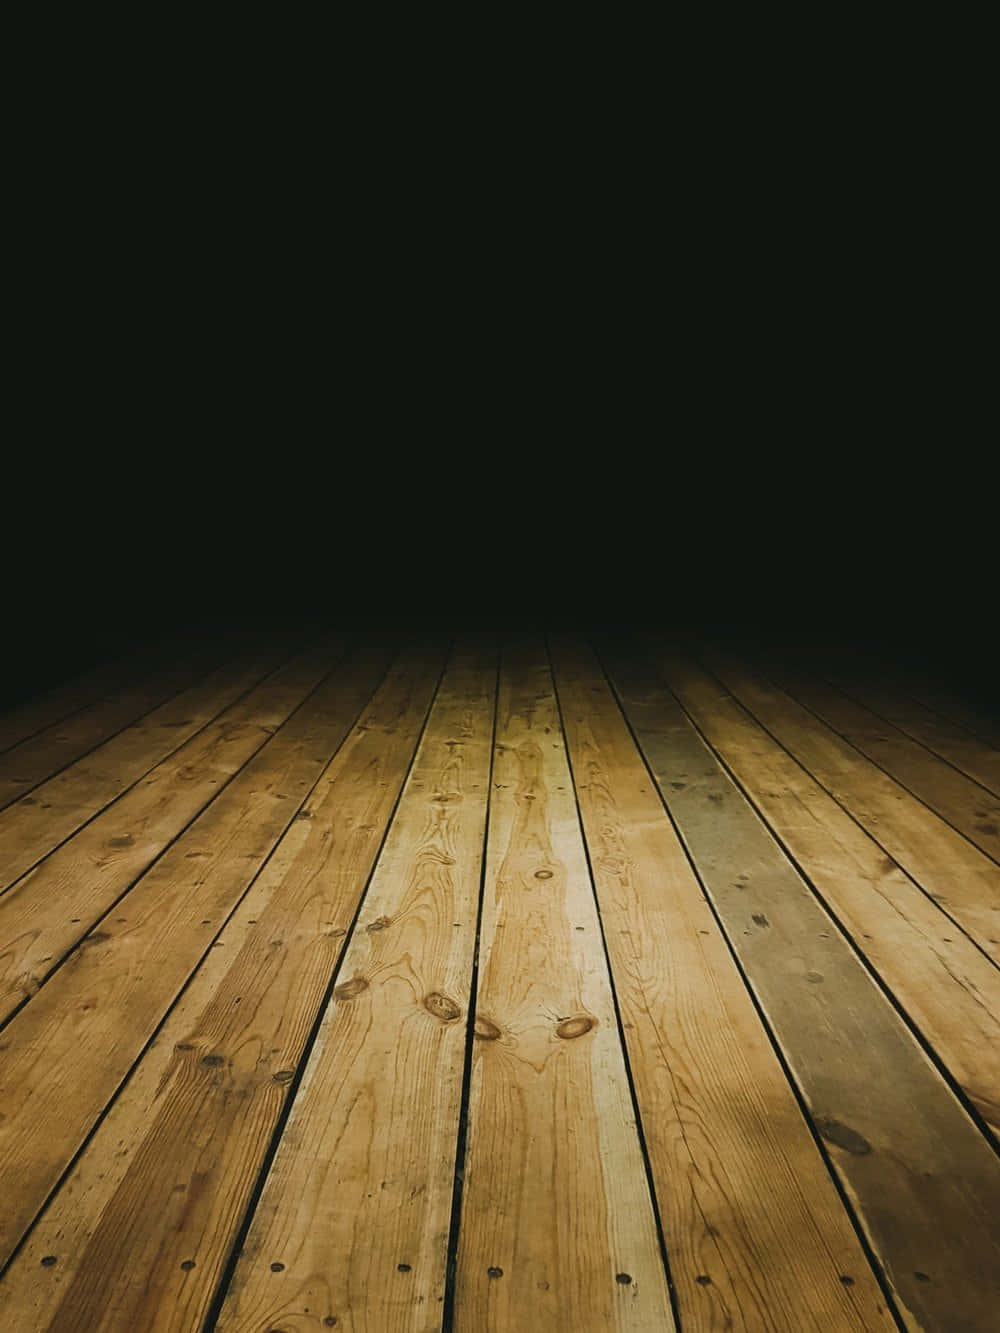 Wooden Floor In Dark Room With Wooden Planks